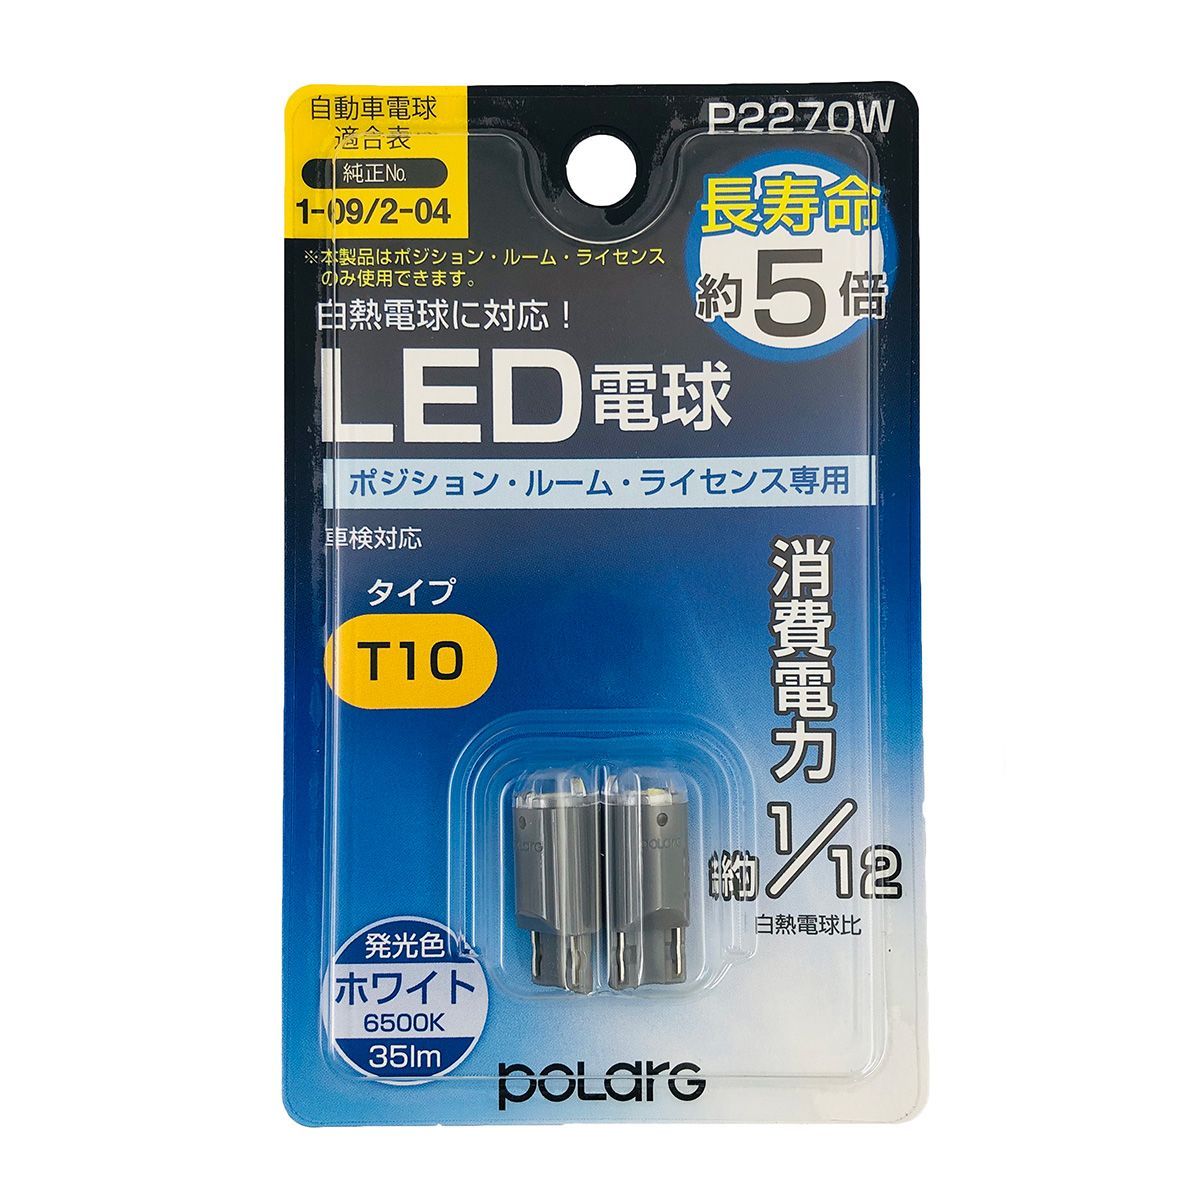 【在庫有】POLARG LED電球 P2270W 6500K T10 ホワイト